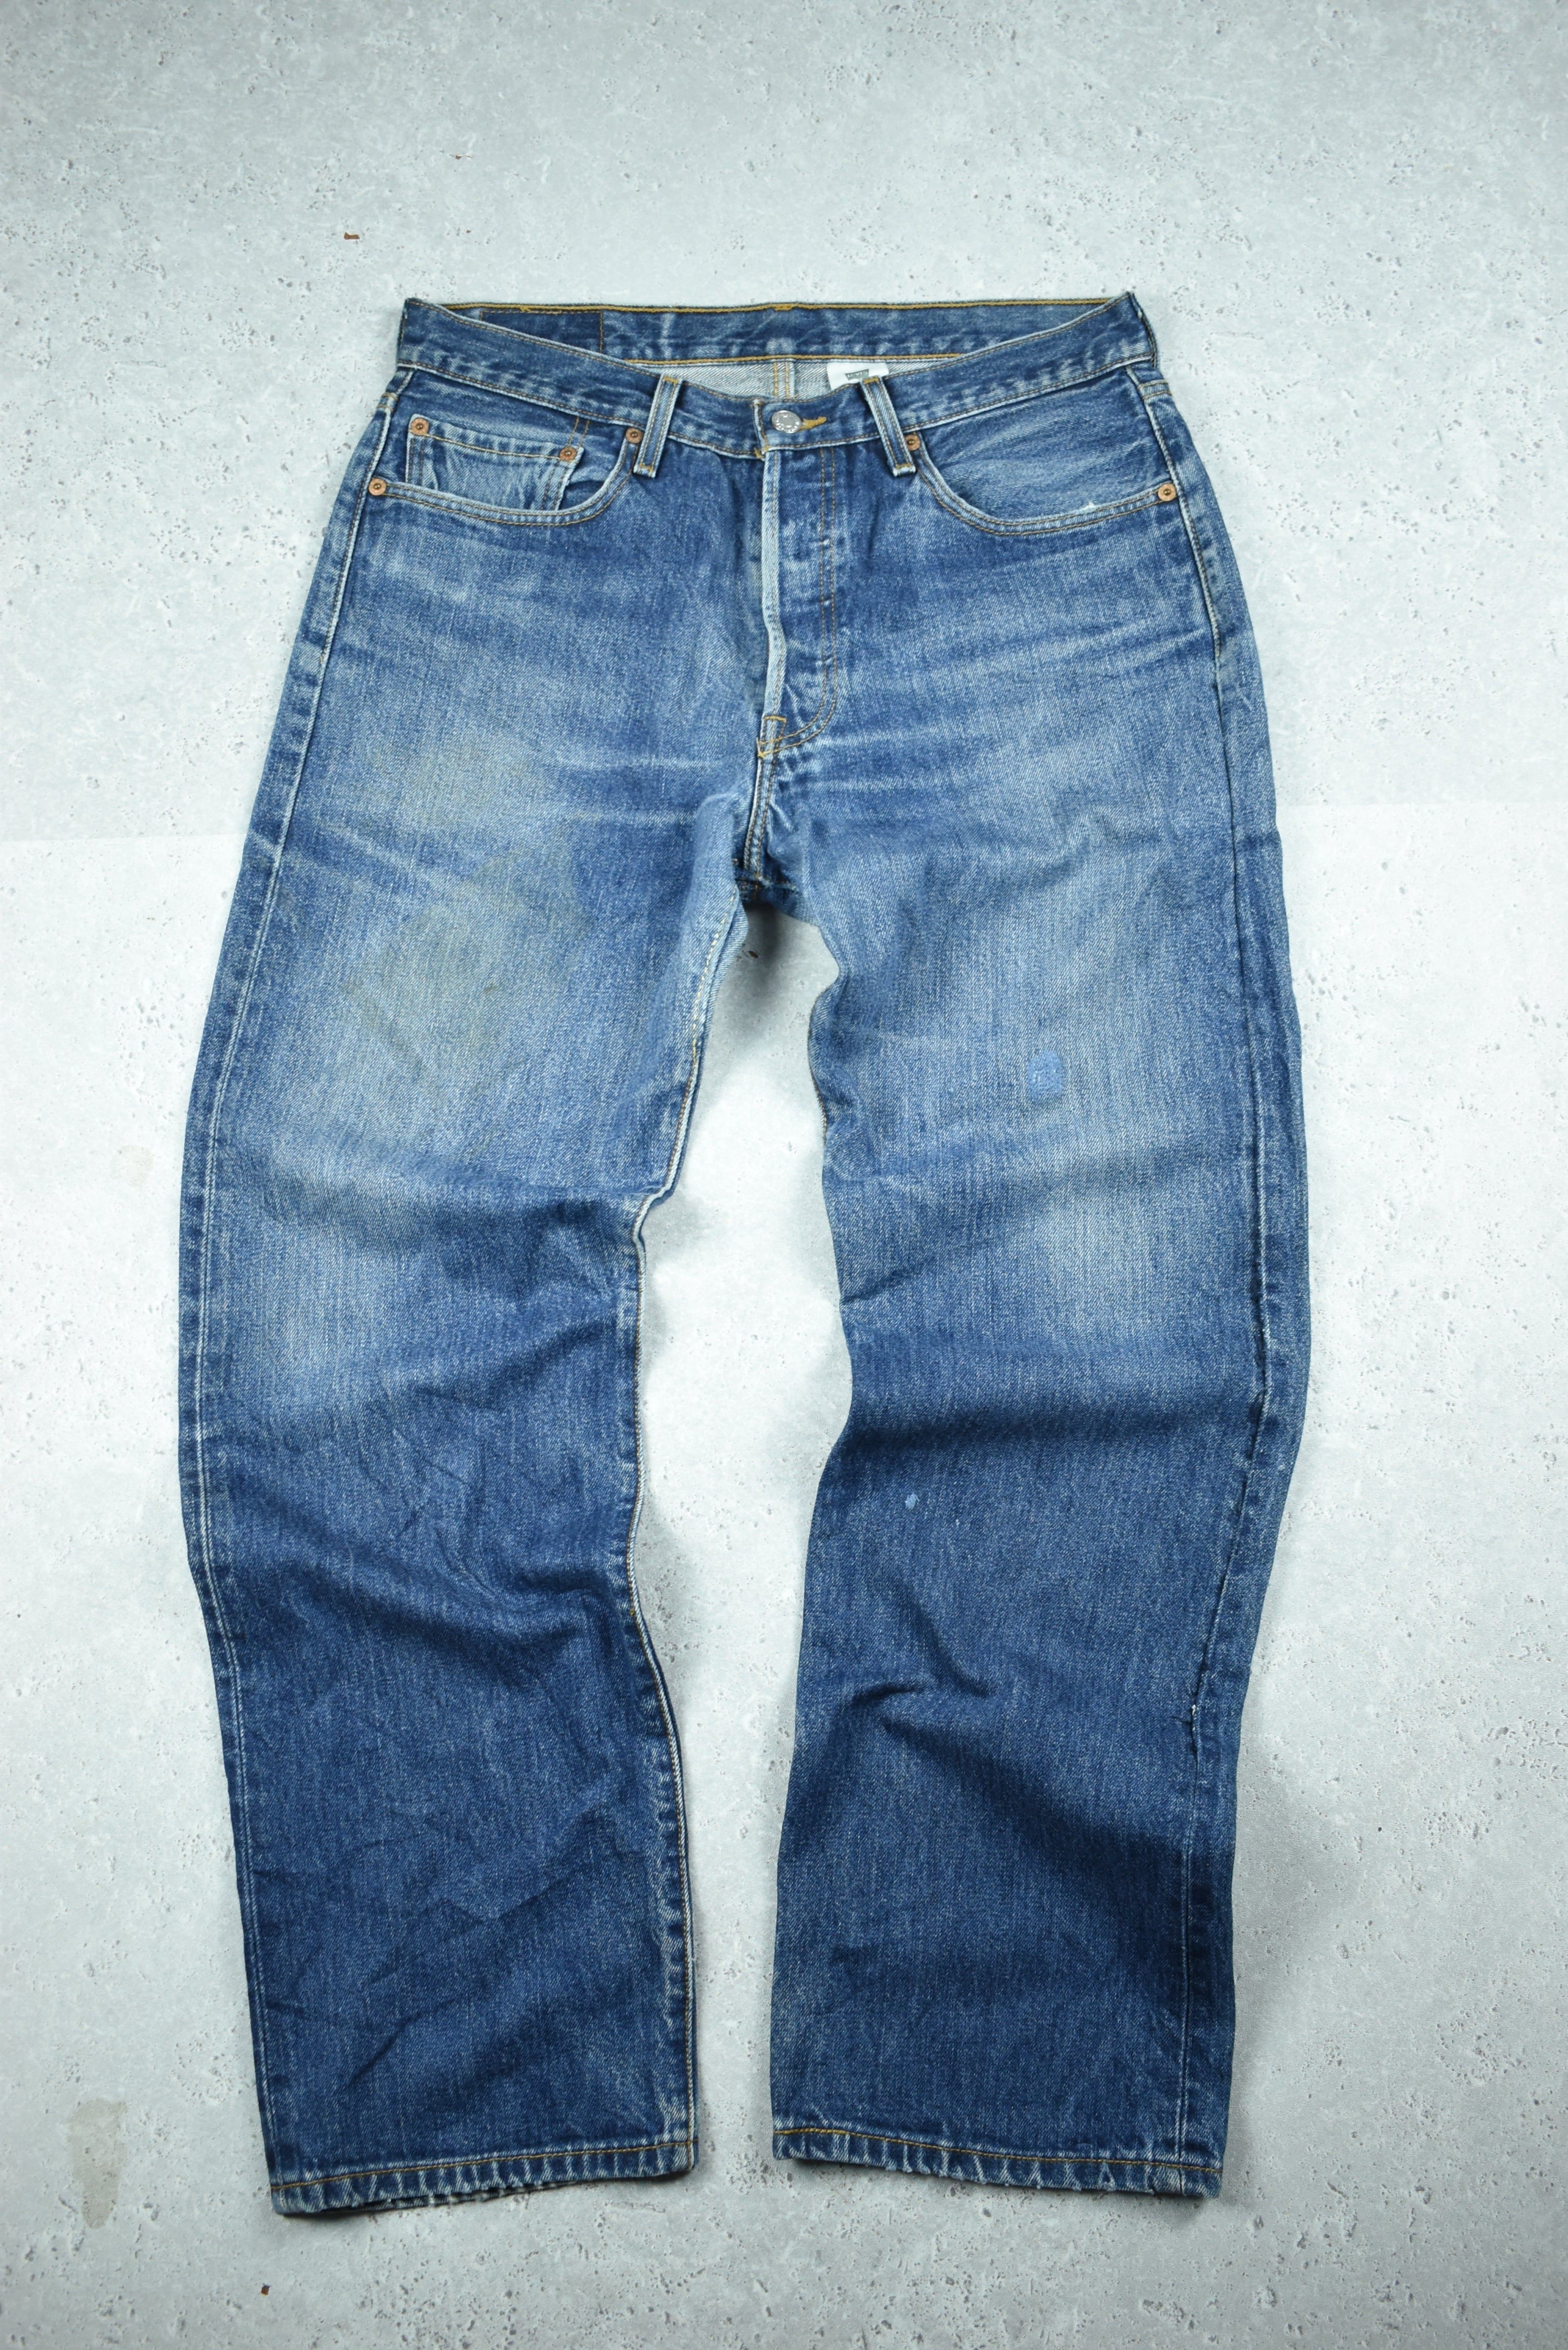 Vintage Levis 501 Denim Jeans 33x30